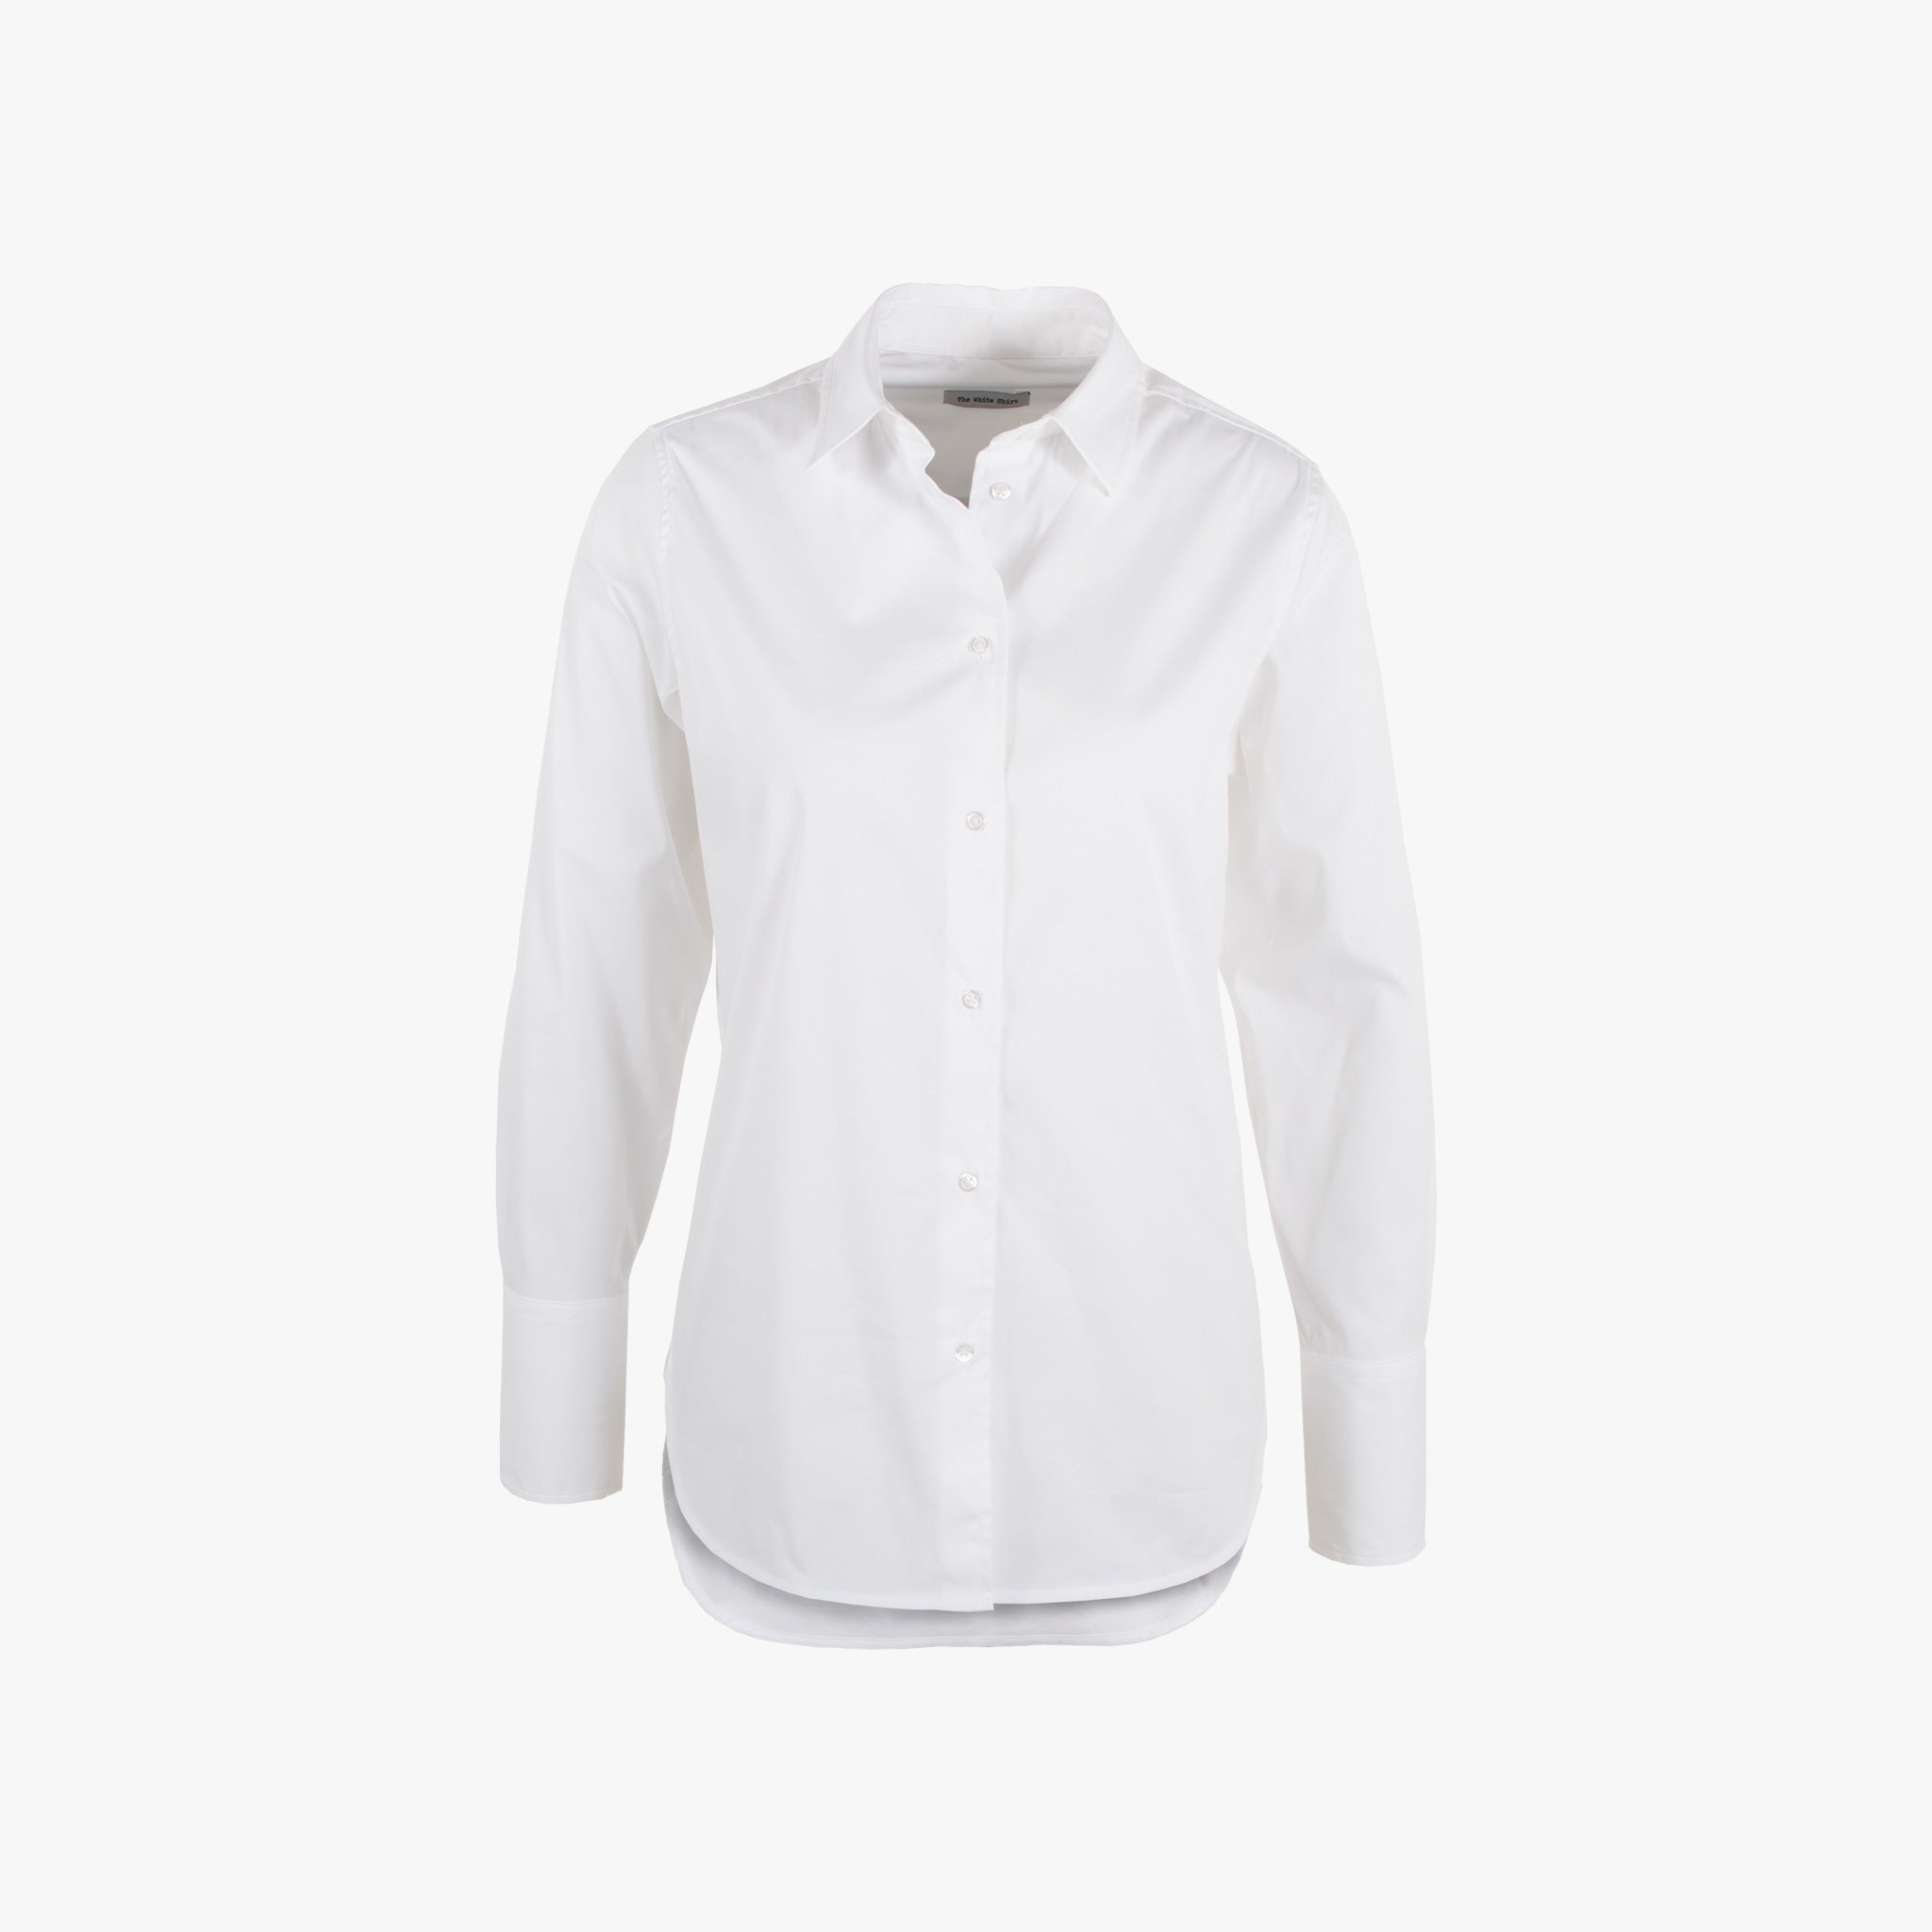 The White Shirt, Bluse Fashion Basic, Vorderansicht | weiß